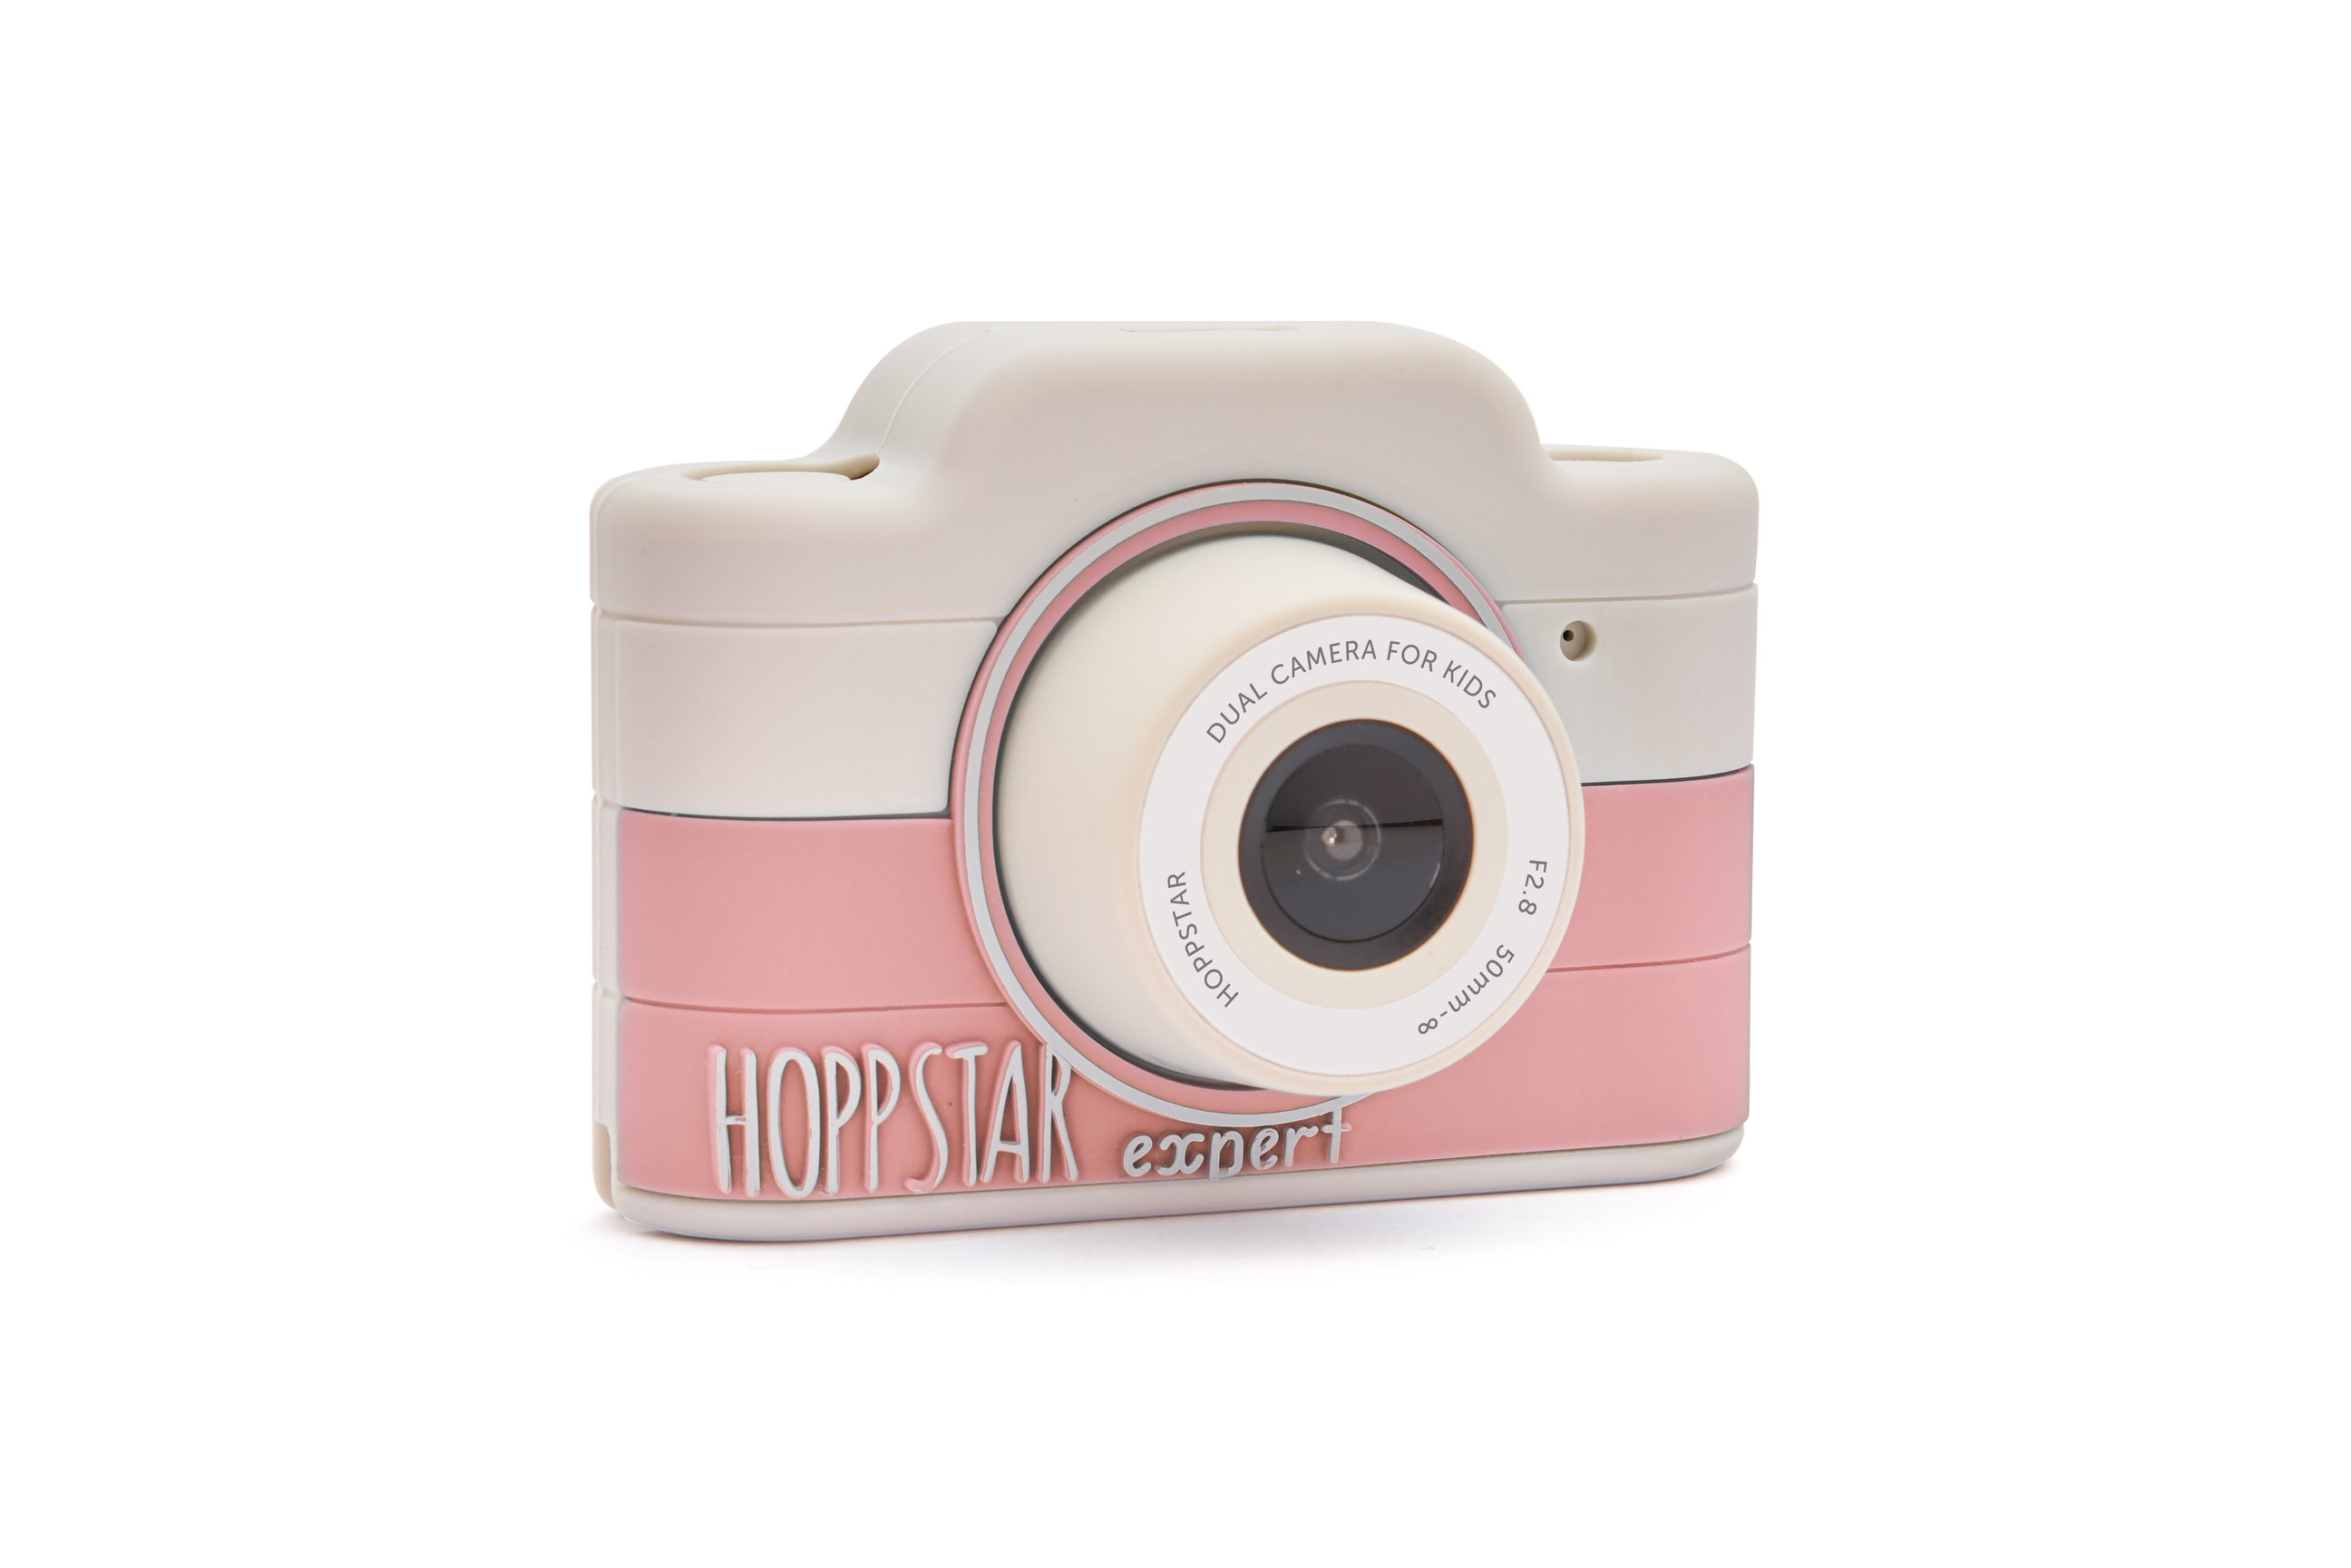 Hoppstar Expert Kamera mit Blush (rosa/weiß) Silikonhülle, Ansicht Frontal Schräg